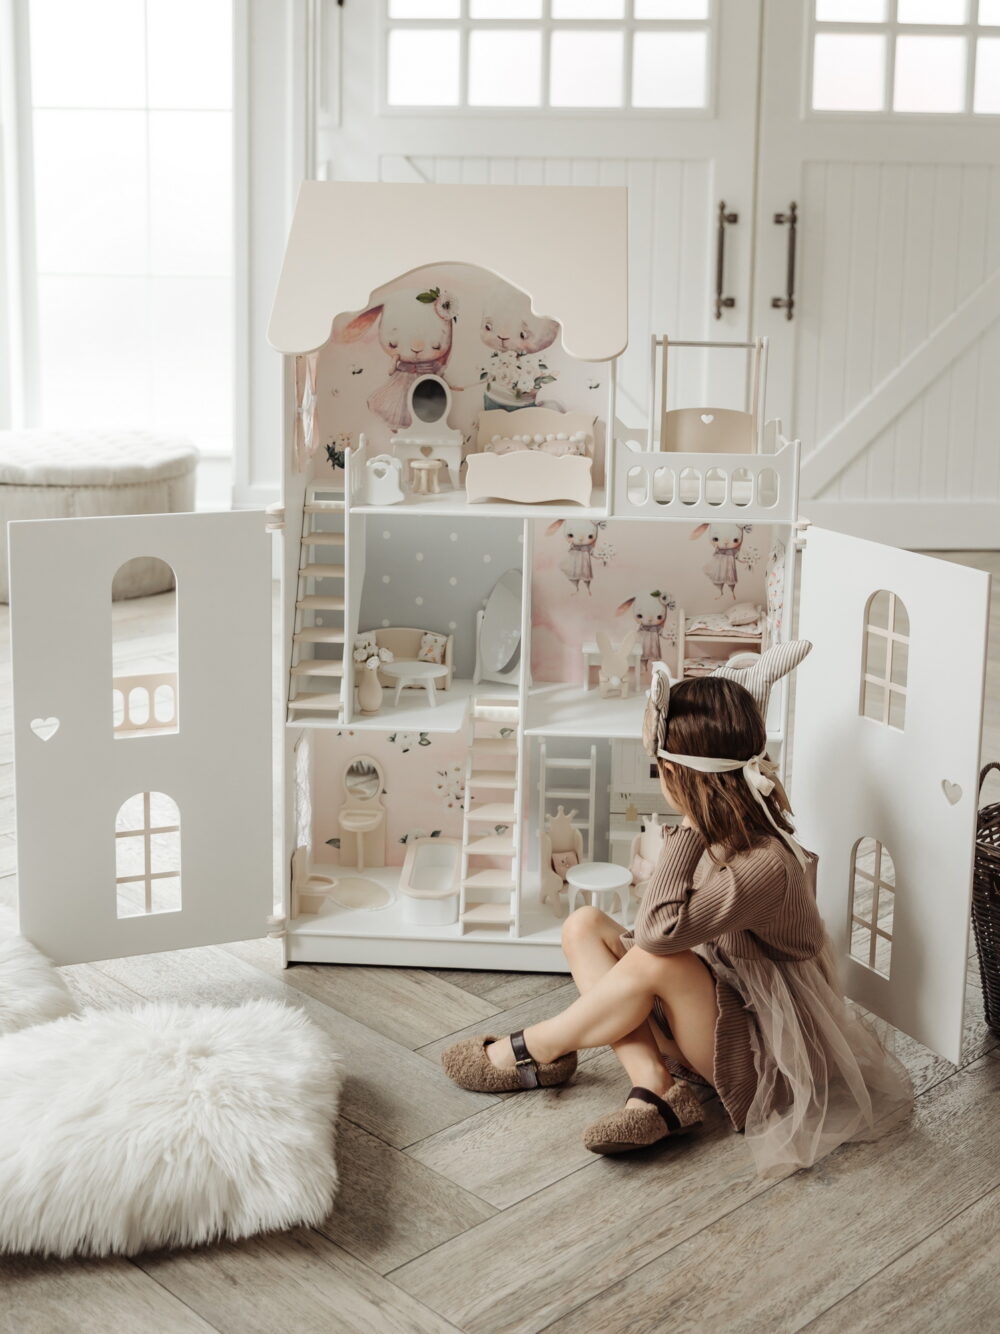 Красивый кукольный домик с дверями. Девочка сидит на полу и играет. На домике нарисованы милые зайки. Вид с открытыми дверками, внутри лежит кукла барби.